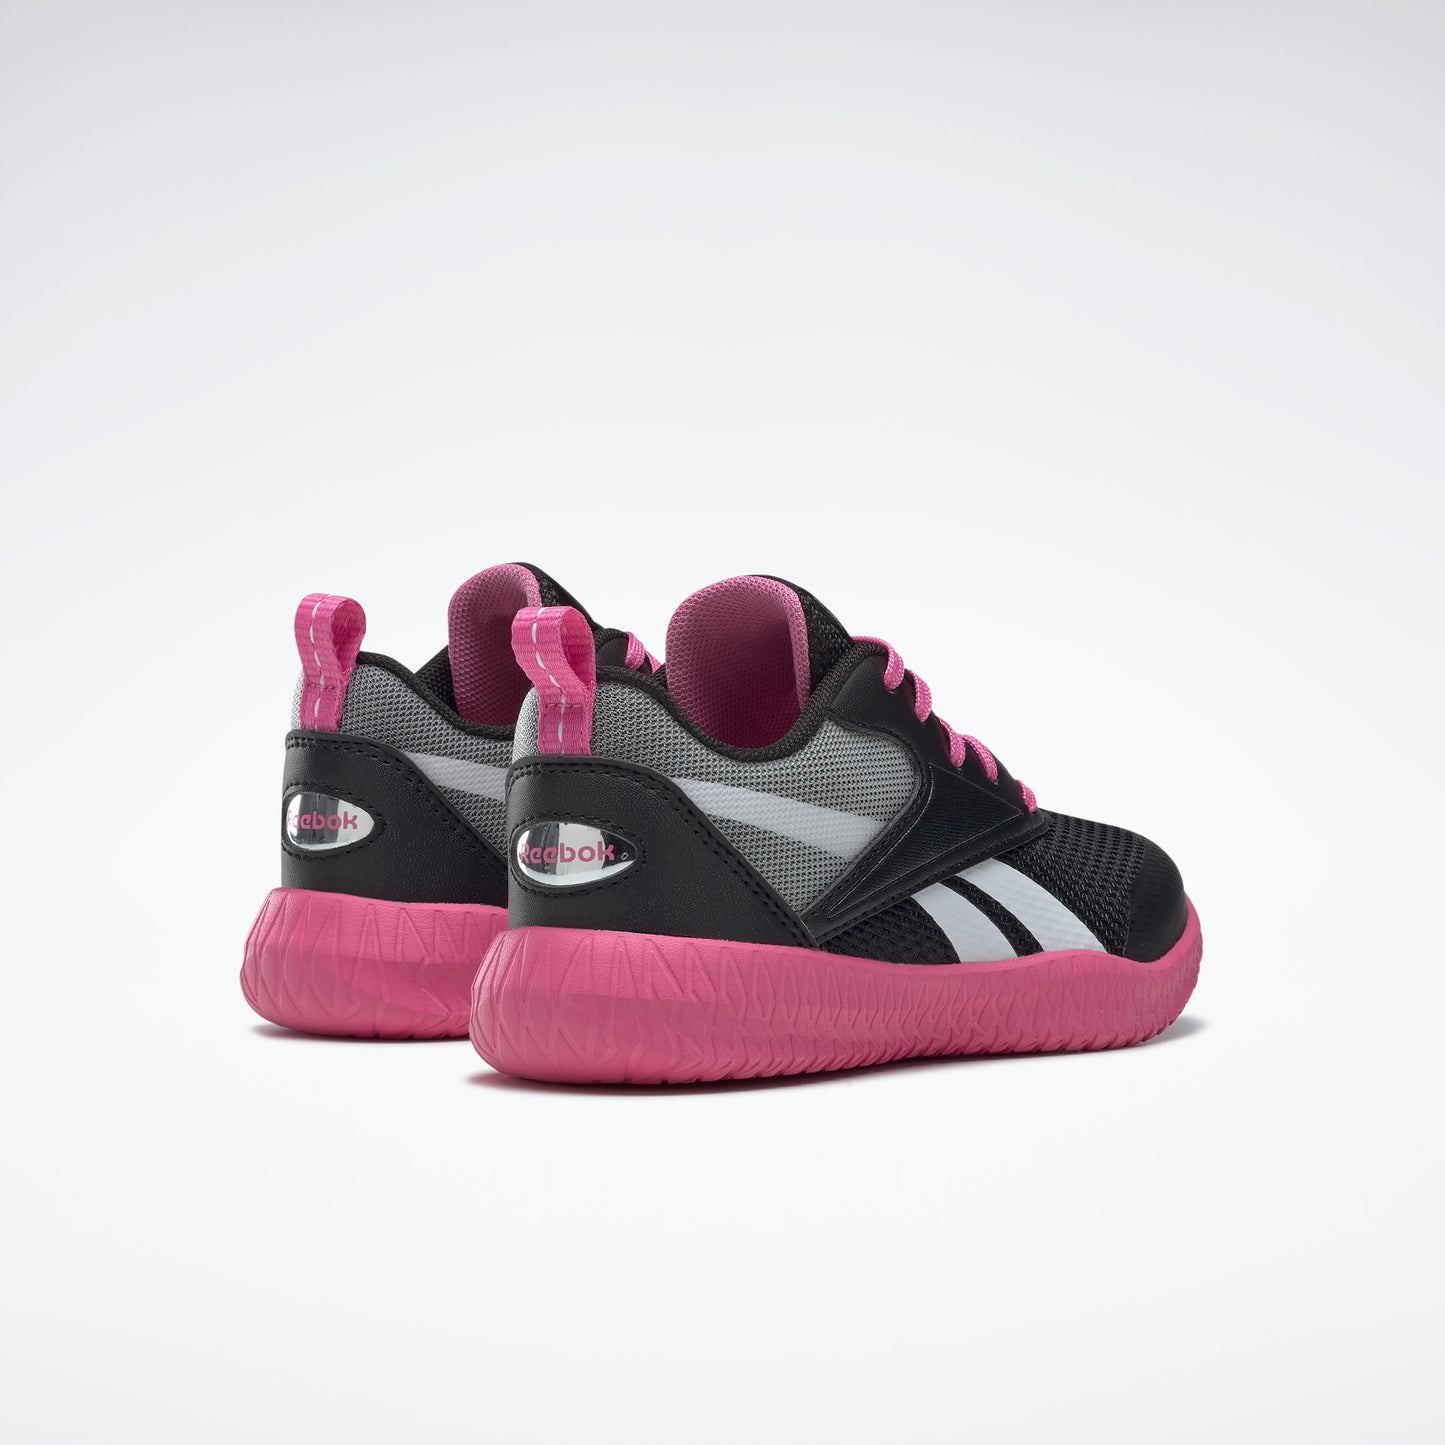 Reebok Footwear Kids Reebok Flexagon Energy 3 Shoes Child Black/Ftwwht/Trupnk